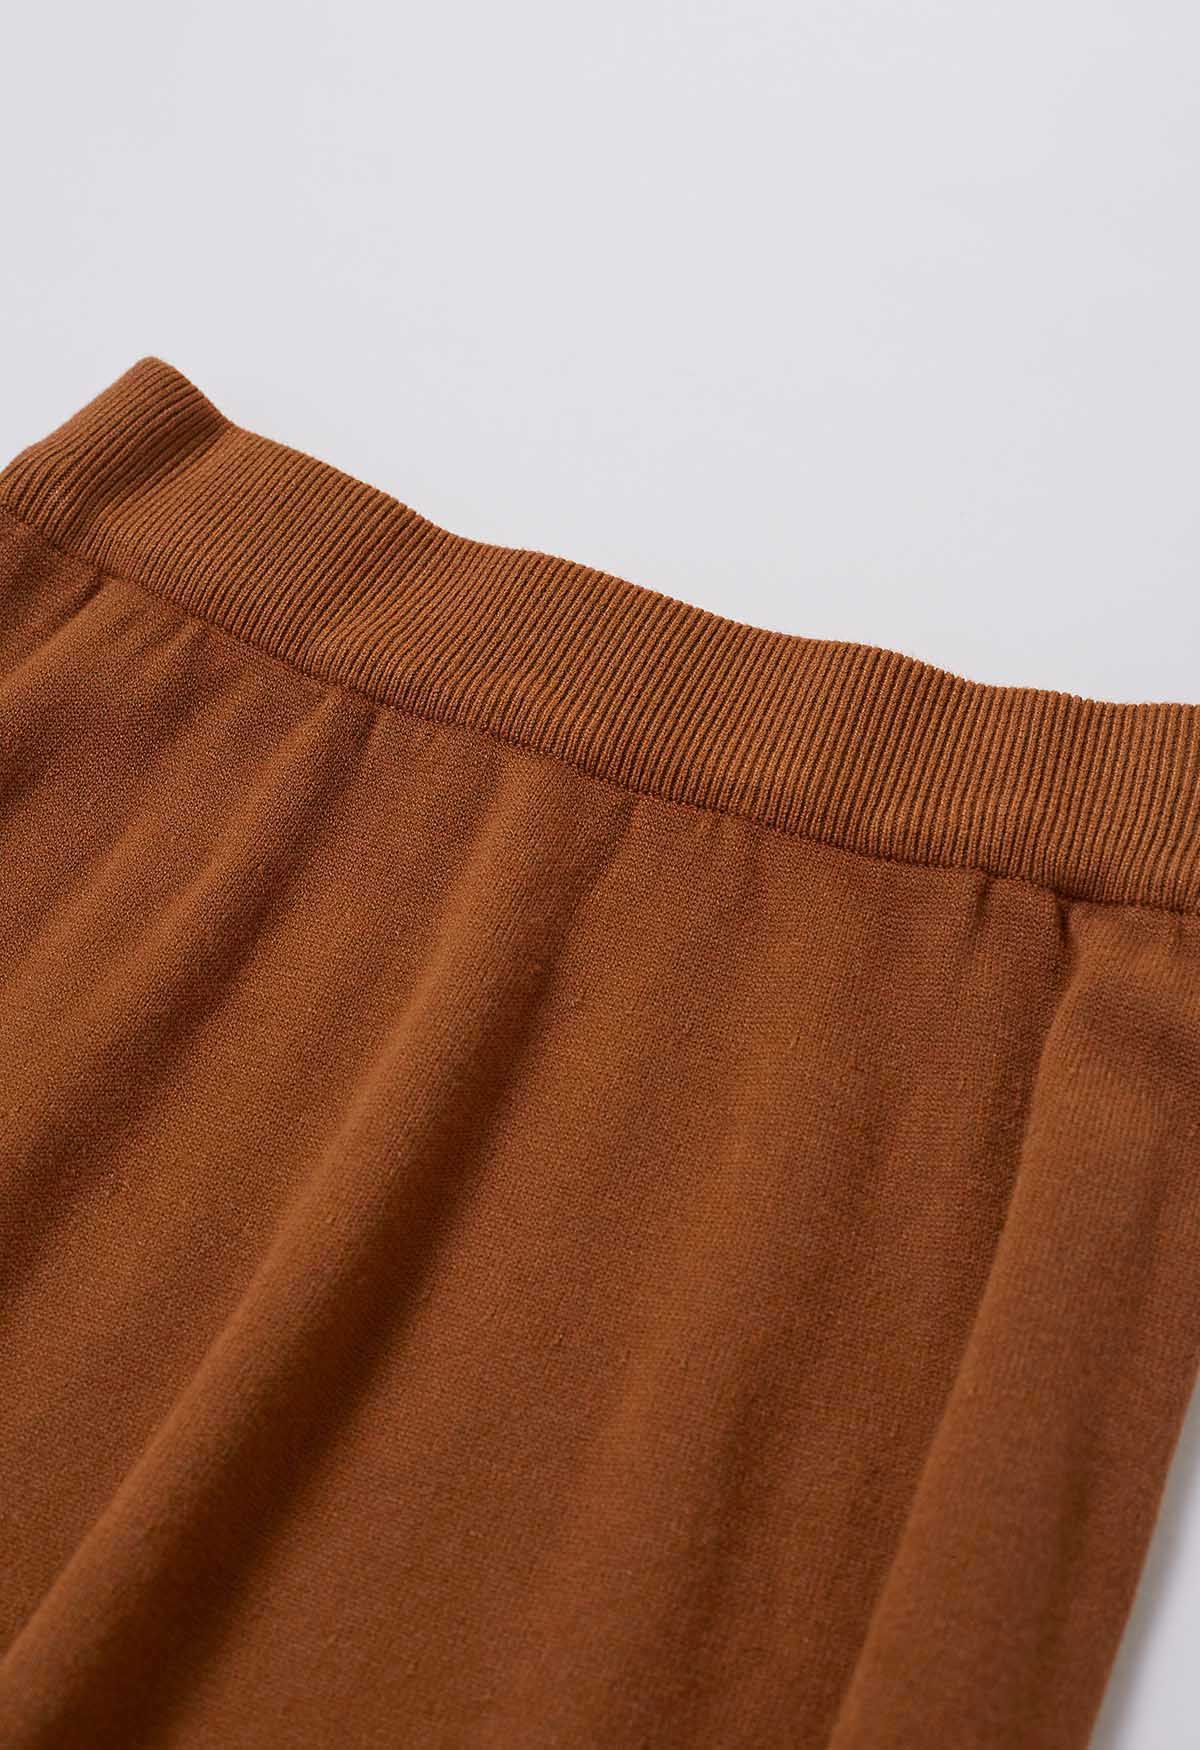 Zigzag Hemline Hollow Out Knit Midi Skirt in Pumpkin